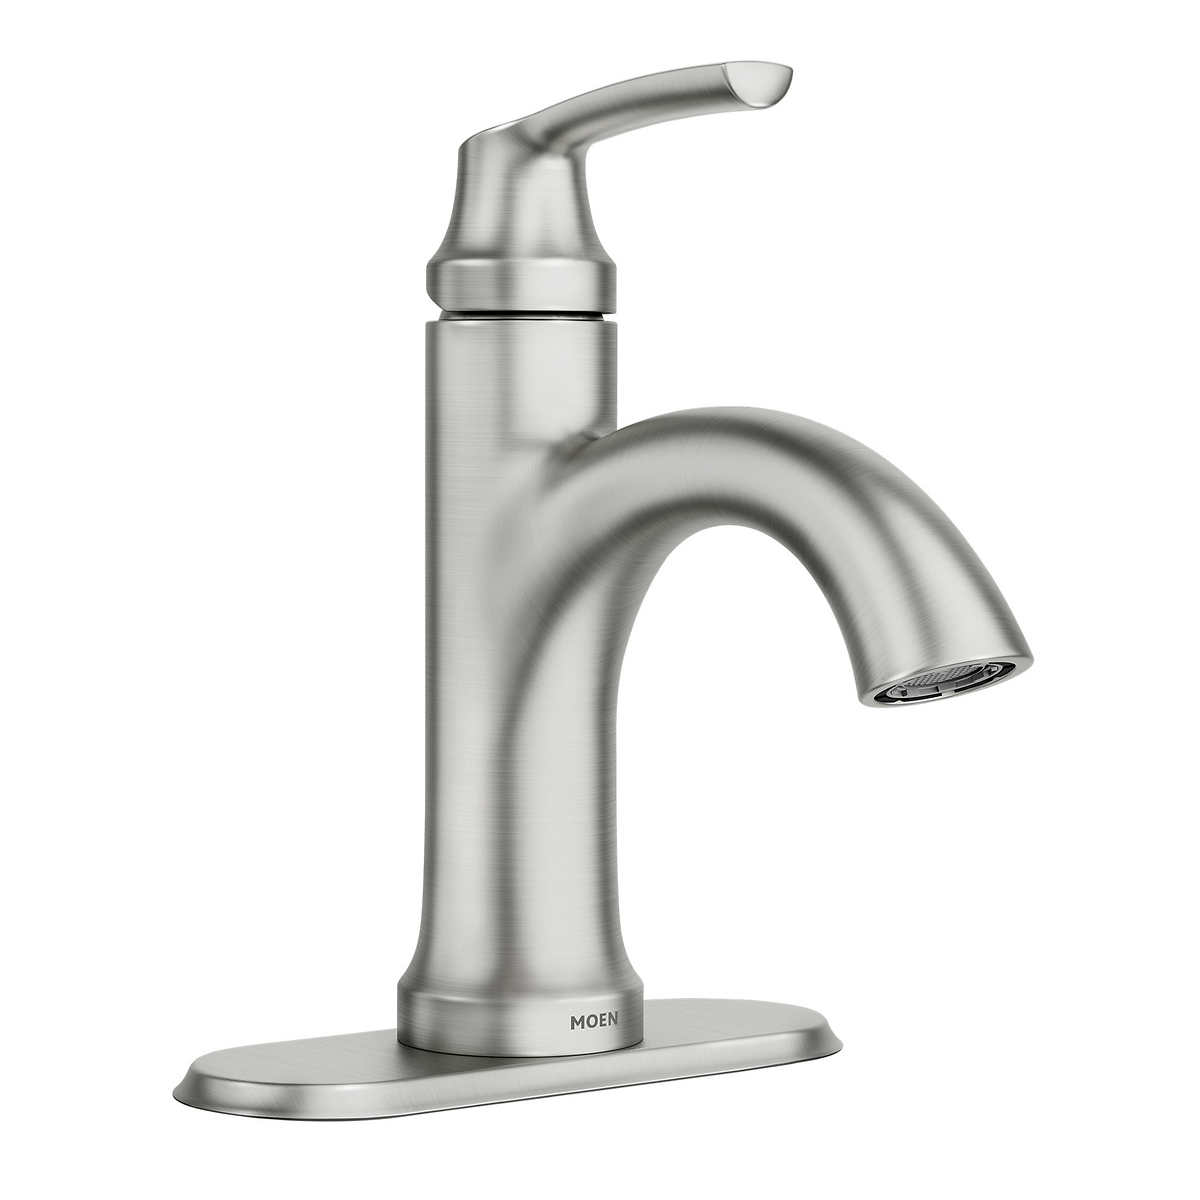 Moen Welton One Handle Spot Resist, Moen Brushed Nickel Bathroom Faucet